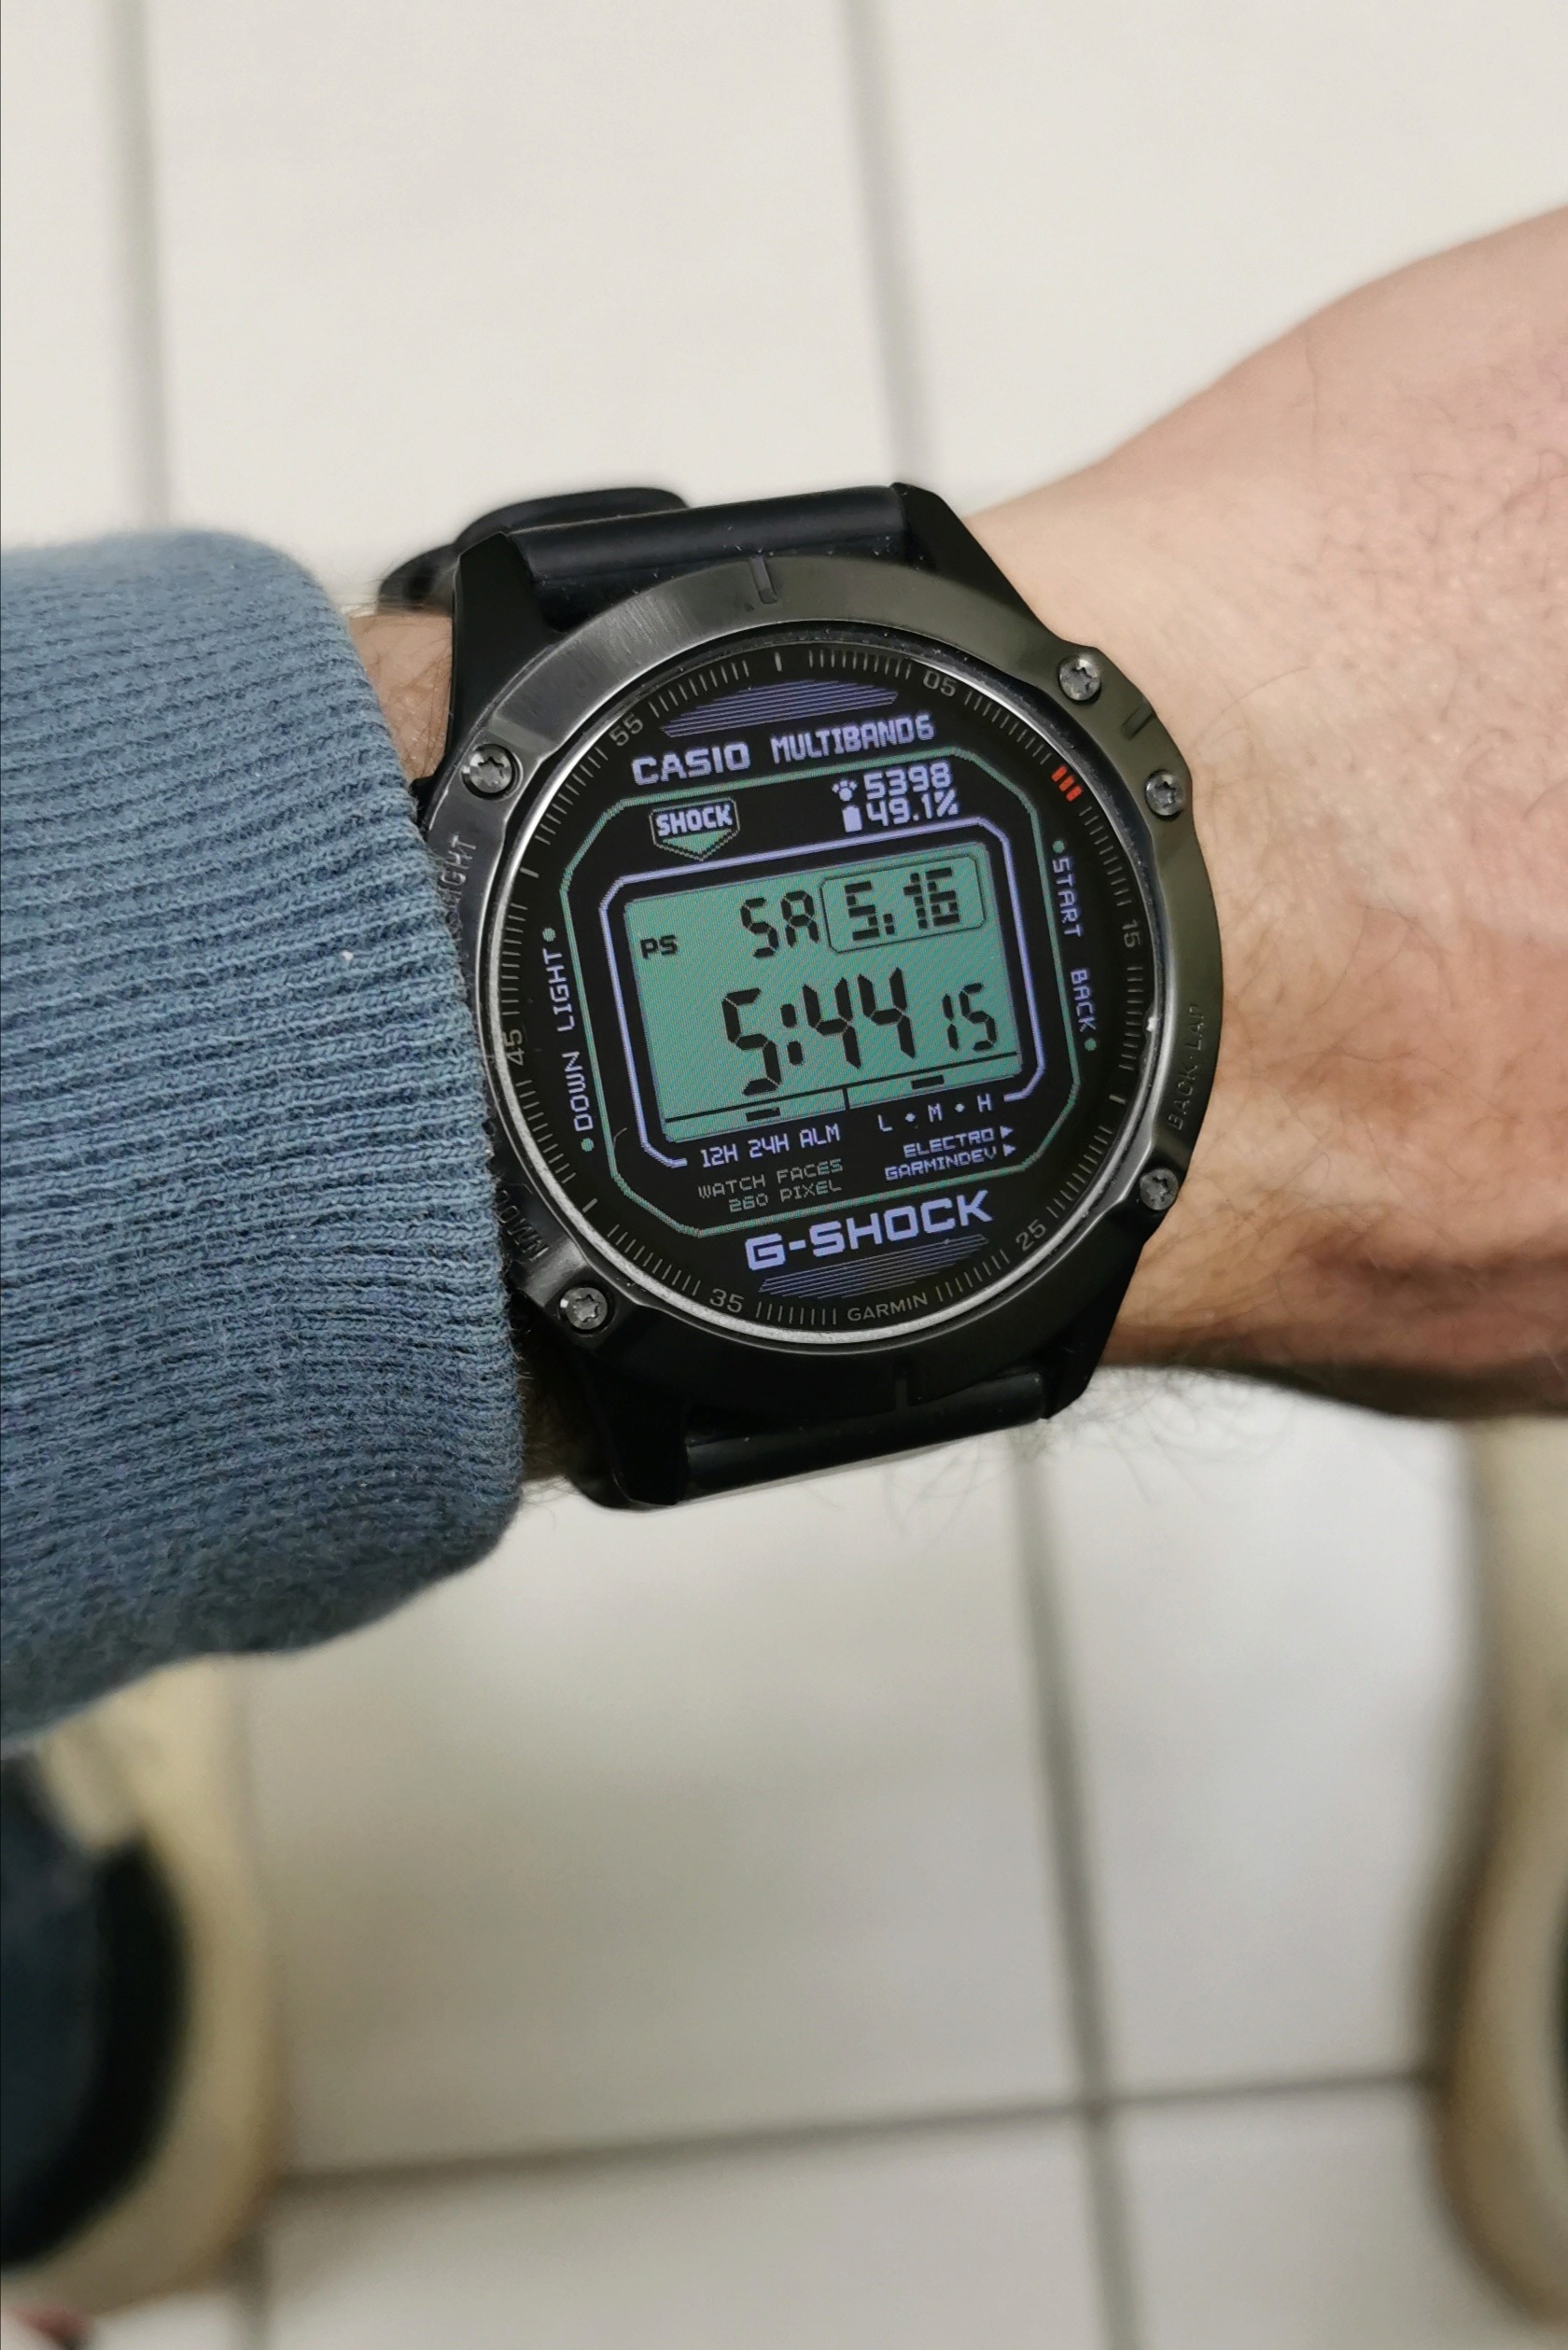 Quelques fois posez vous votre montre pour une montre type GPS ? - Page 2 Img_2435